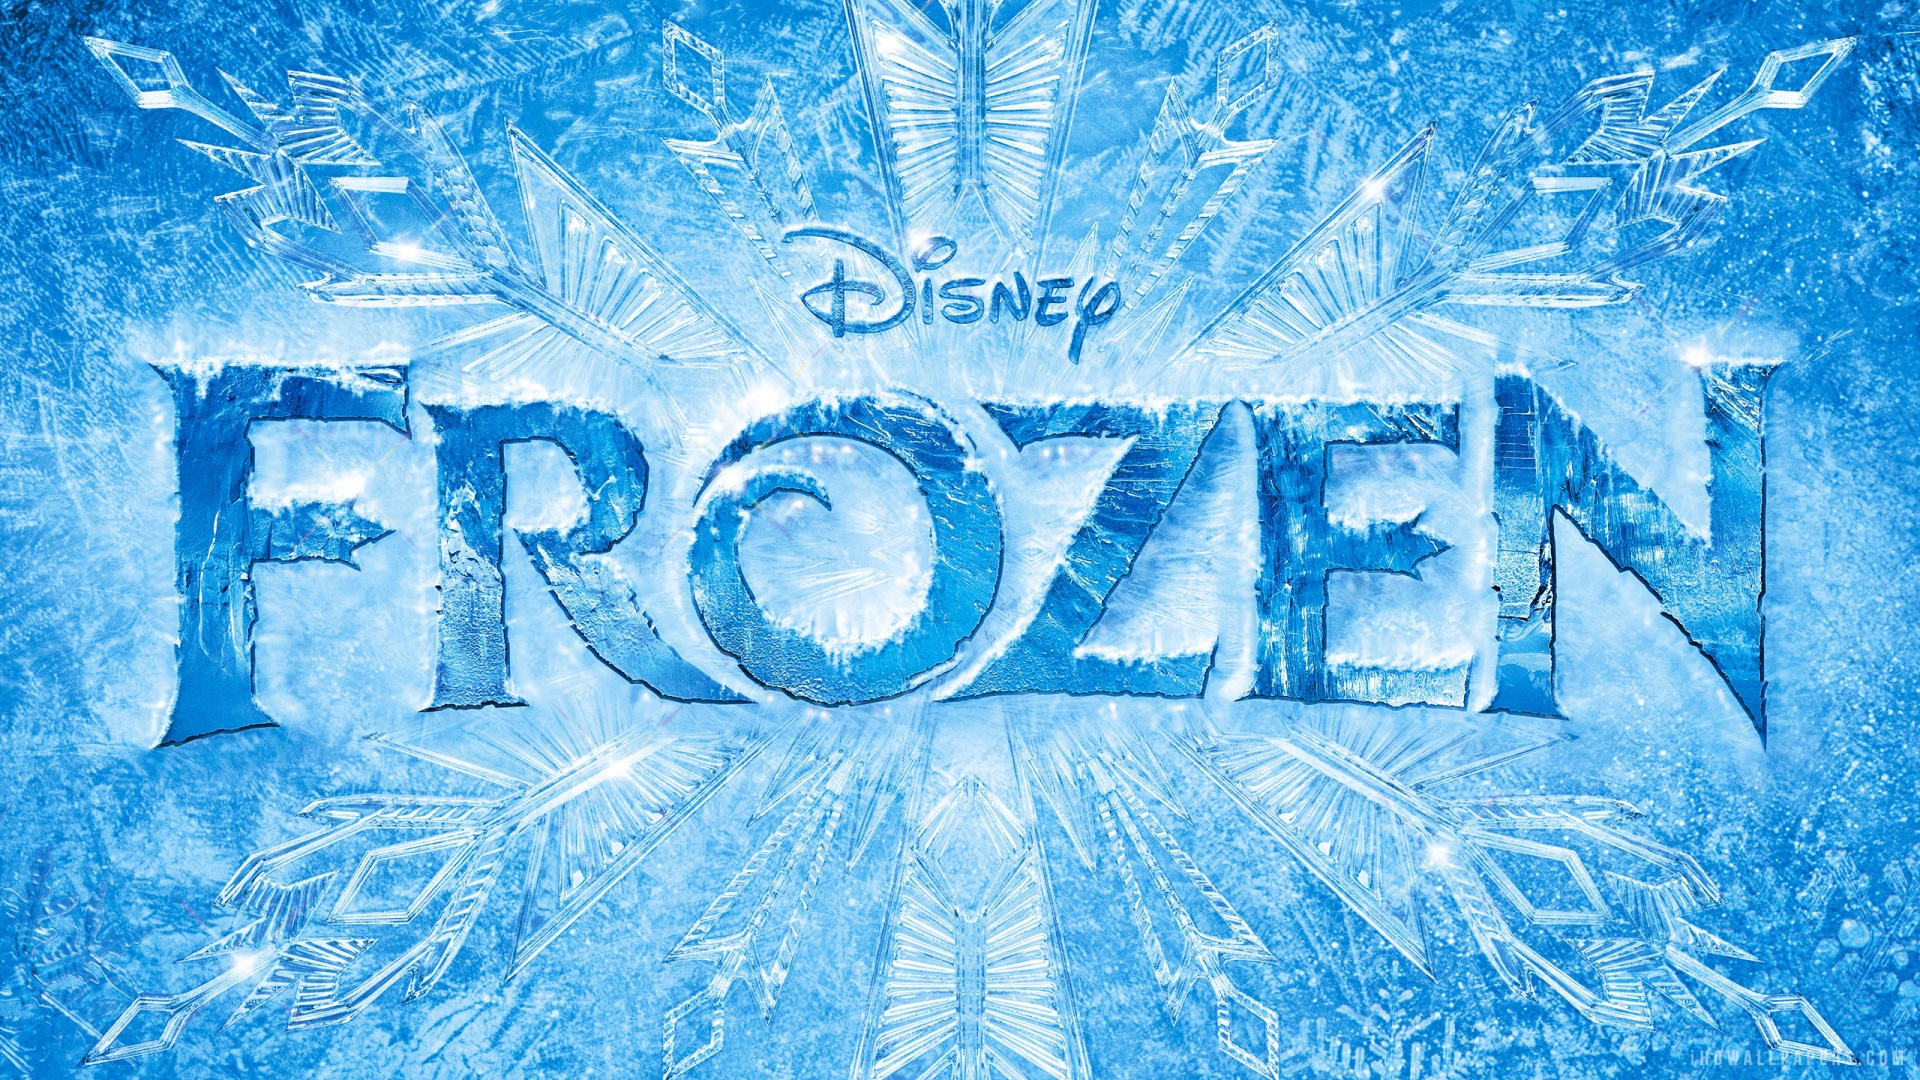 Disney Frozen 2013 HD Wallpaper   iHD Wallpapers